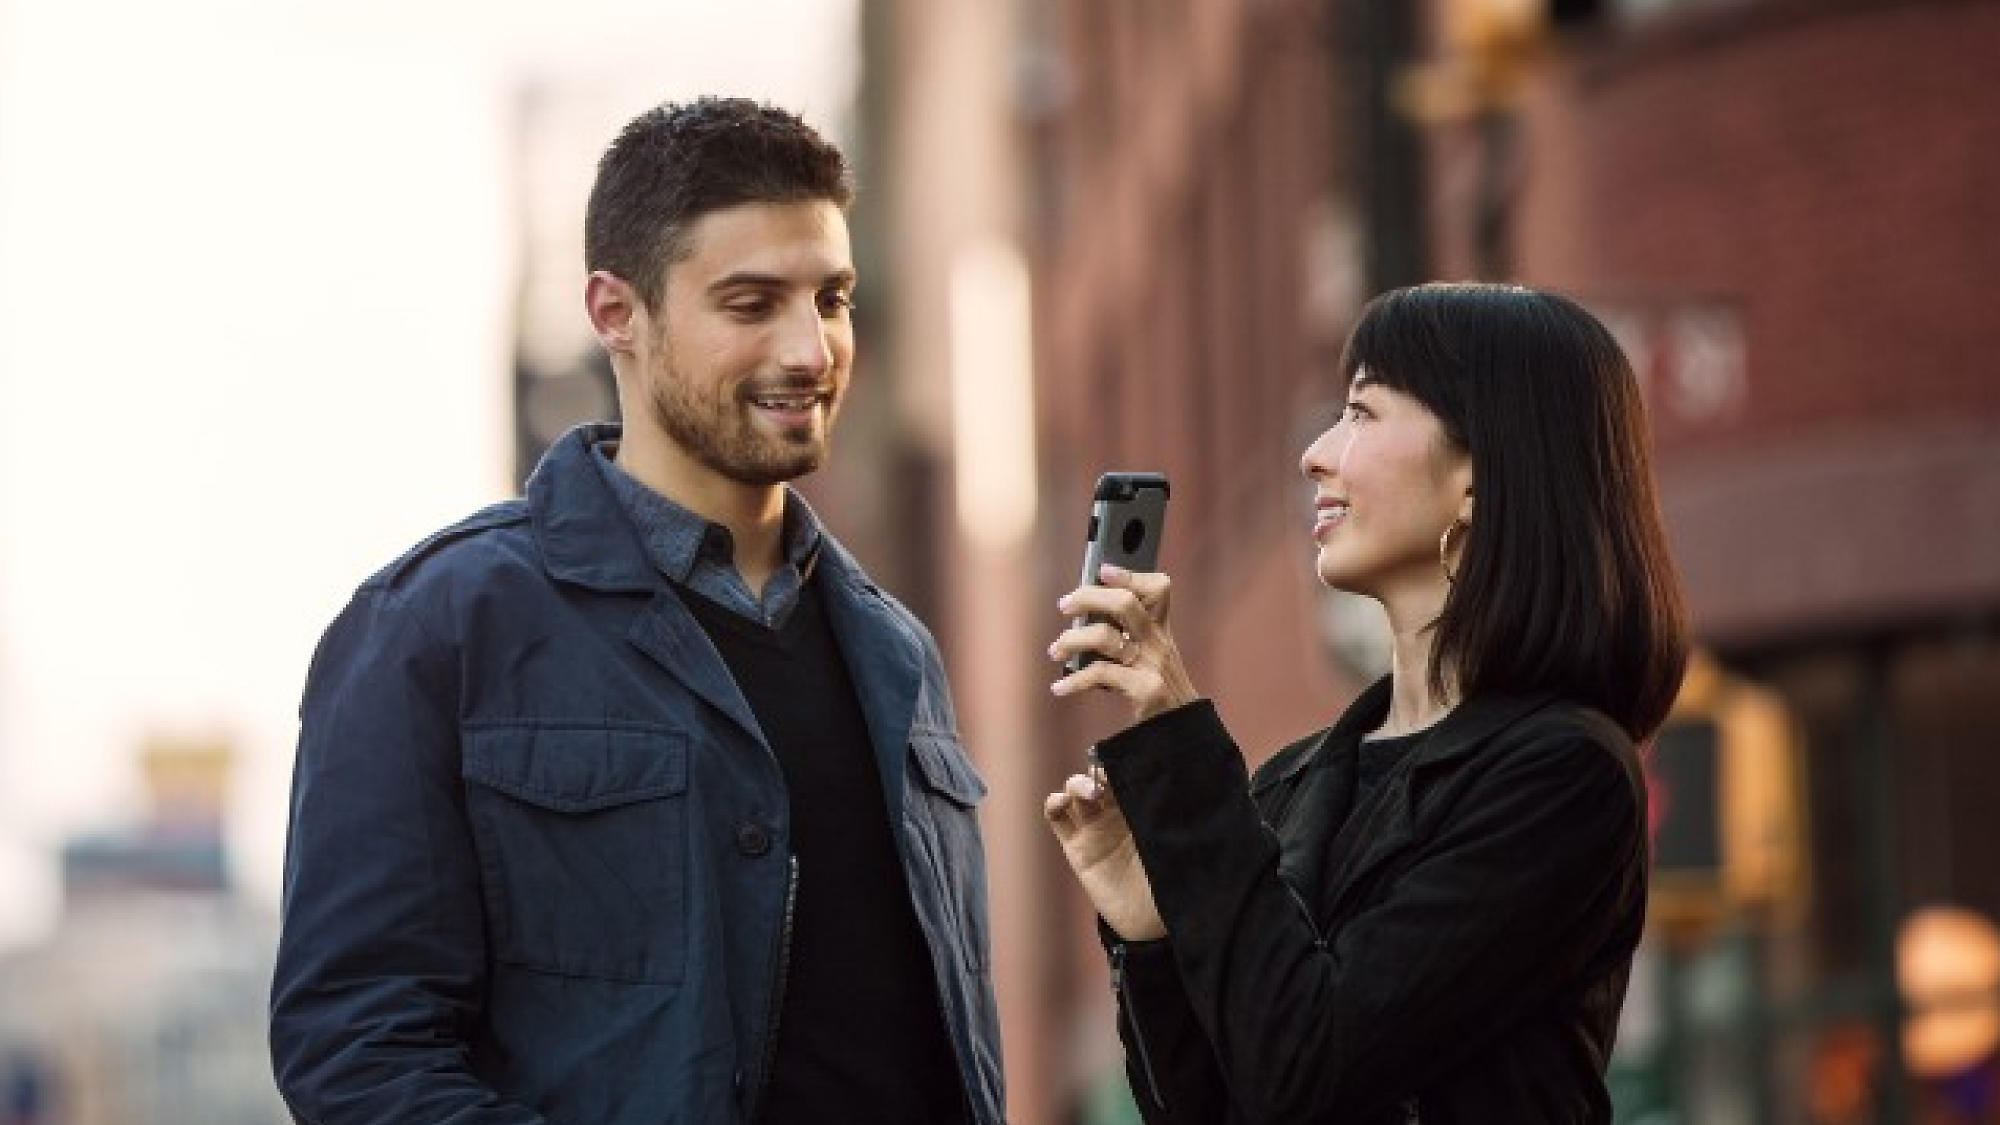 امرأة تحمل هاتفًا ذكيًا تشير به نحو رجل بينما يقف كلاهما في أحد شوارع المدينة، يبتسمان ويتبادلان المحادثة.